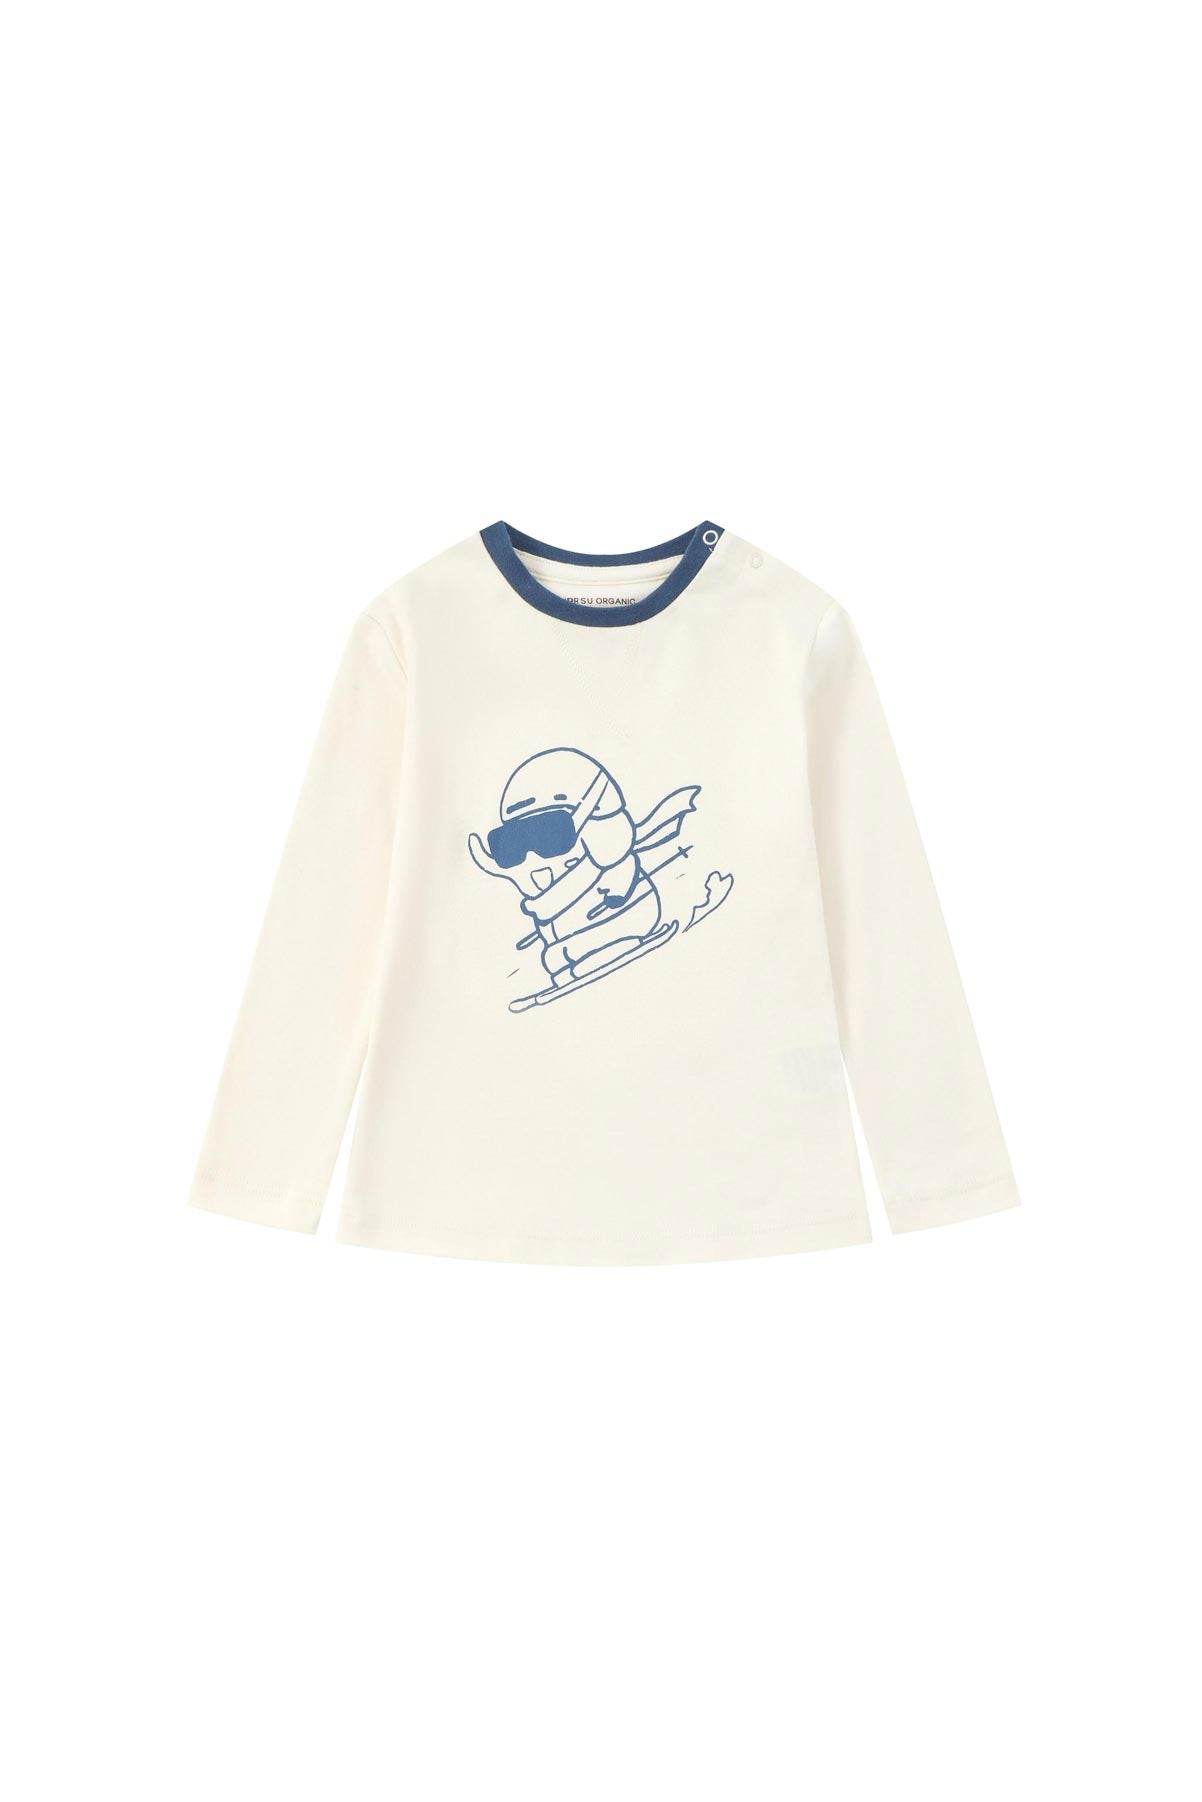 front of Toddler Organic Long Sleeve Tee Shirt-Ski